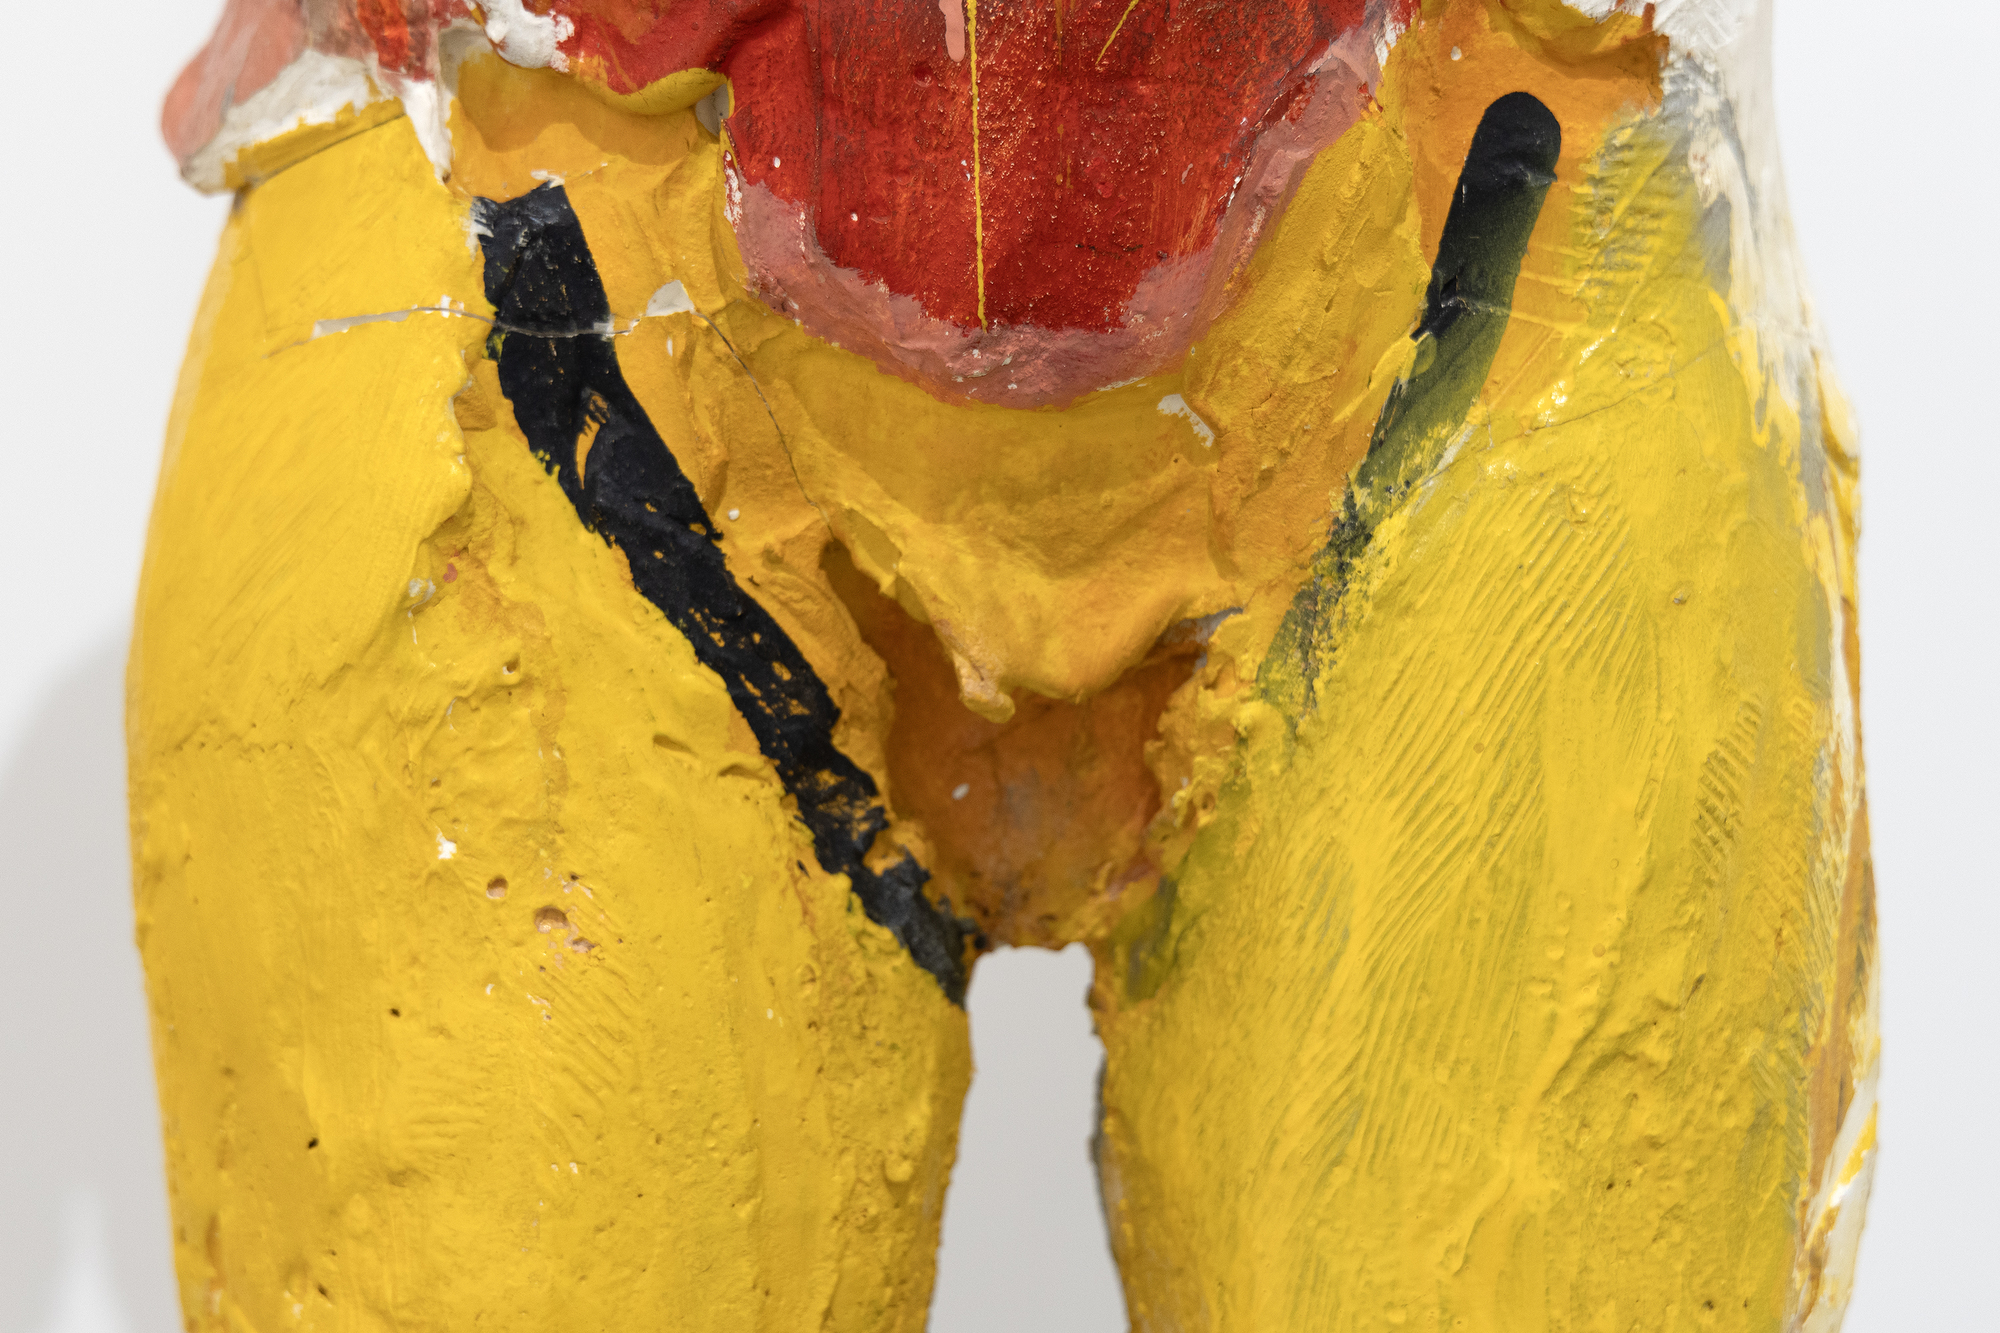 曼努埃尔·内里（Manuel Neri）的早期纸制品在雕塑技术上取得了突破性进展，他的雕塑绘画方法反映了他对色彩和形式表现潜力的深入参与。Hombre Colorado II 中颜色的选择和位置创造了一种特别发自内心的反应，反映了他对色彩的心理和情感维度的细致入微的理解。Hombre Colorado II 于 1958 年构思和制作，反映了 Neri 和他的妻子 Joan Brown 从事丰富的艺术创造力交流的时代，并为他们各自风格的演变和湾区具象运动做出了重大贡献，他们在其中发挥了至关重要的作用。